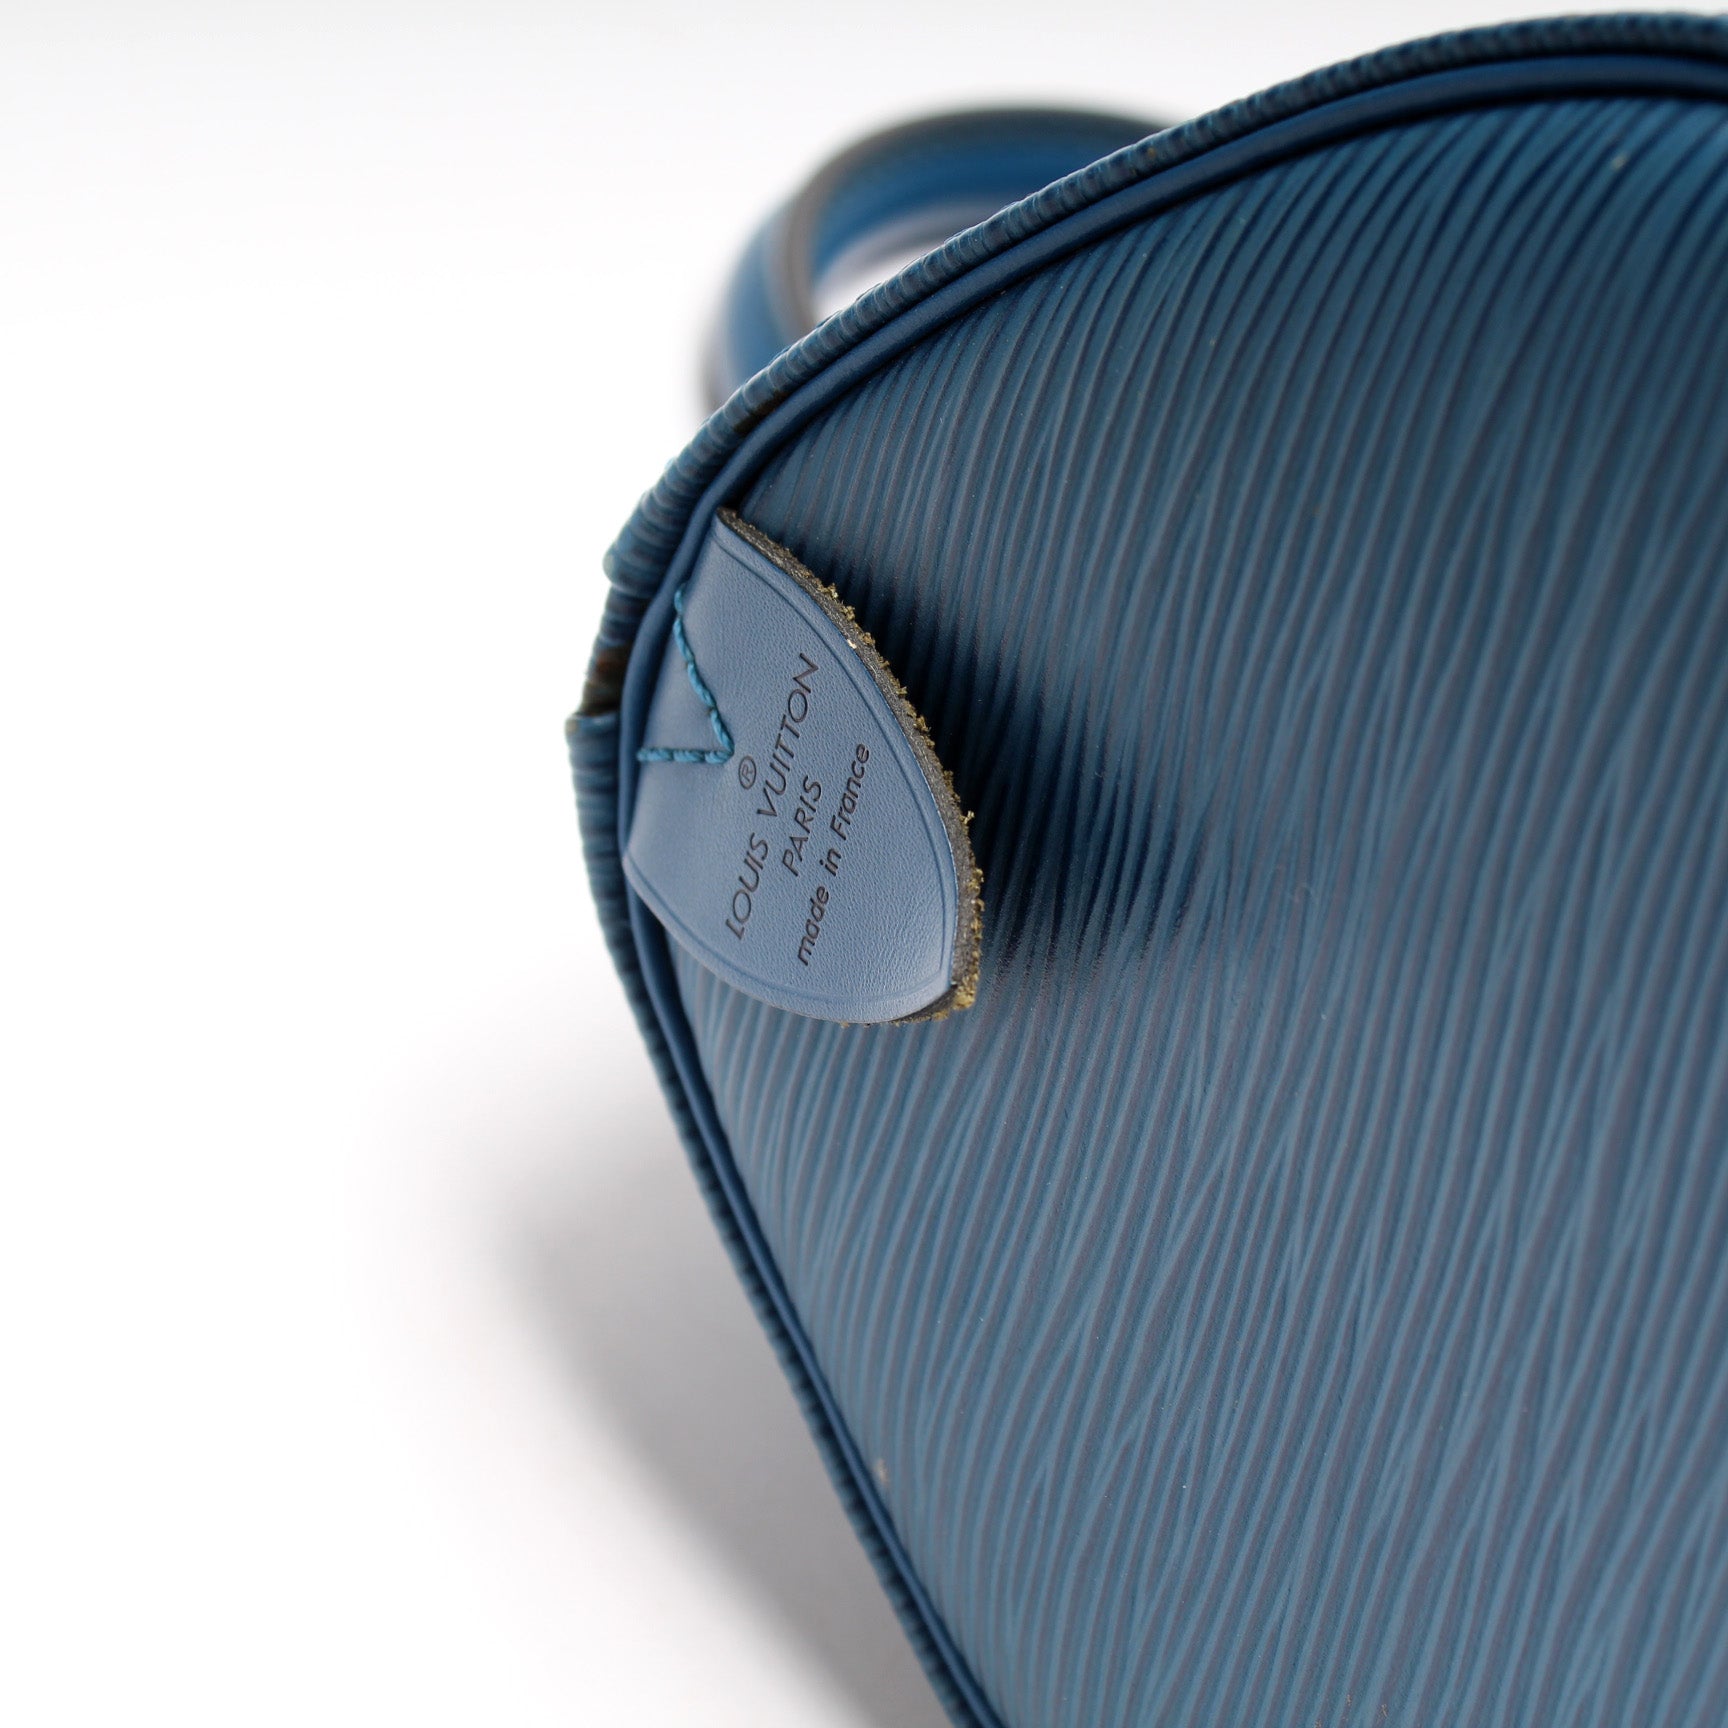 Speedy 25 Epi – Keeks Designer Handbags